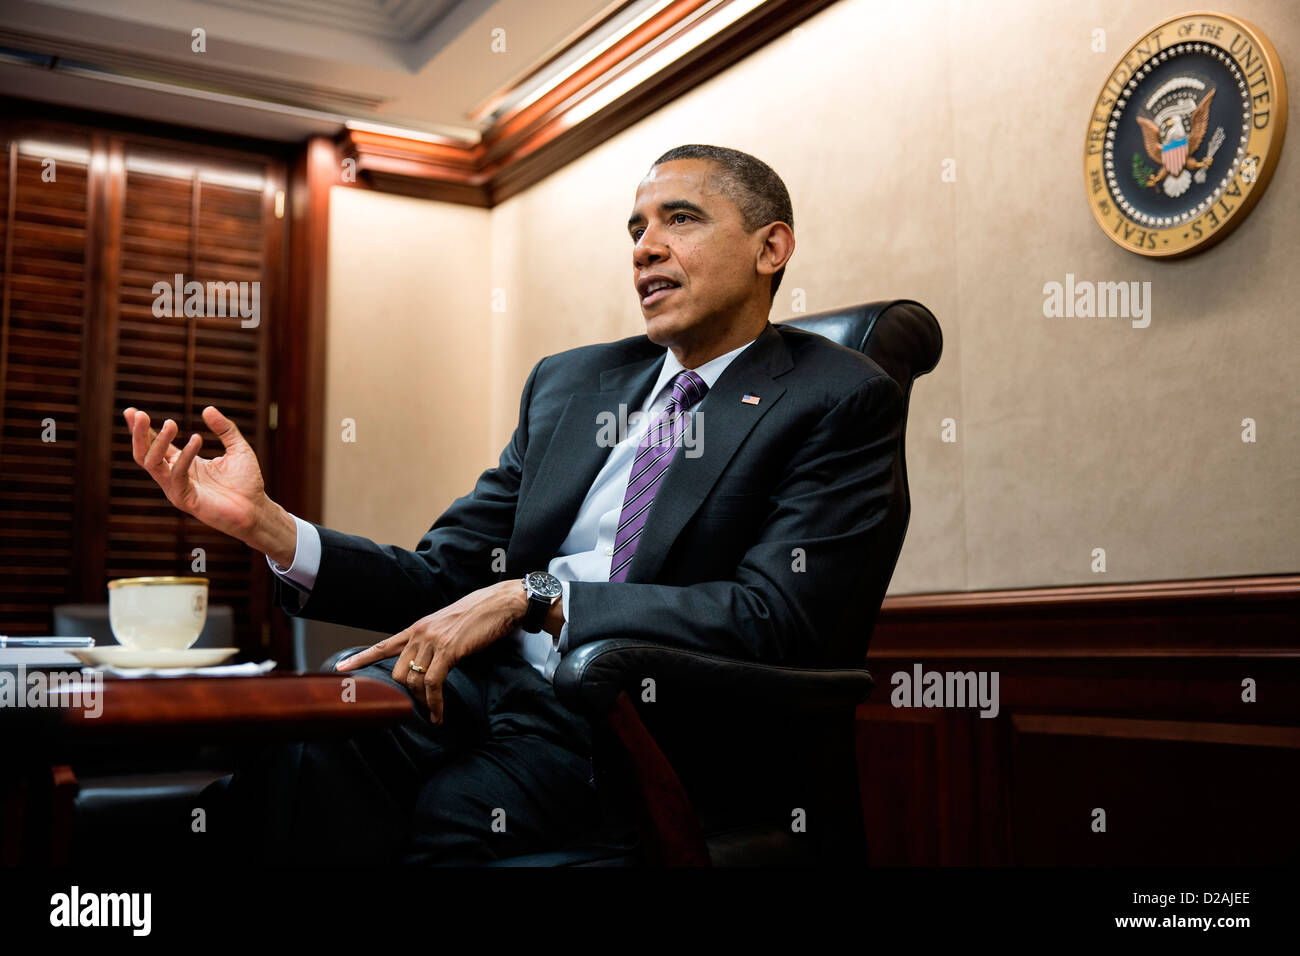 El presidente estadounidense, Barack Obama, tiene una reunión en la Sala de Situación de la Casa Blanca el 7 de diciembre de 2012 en Washington, DC. Foto de stock